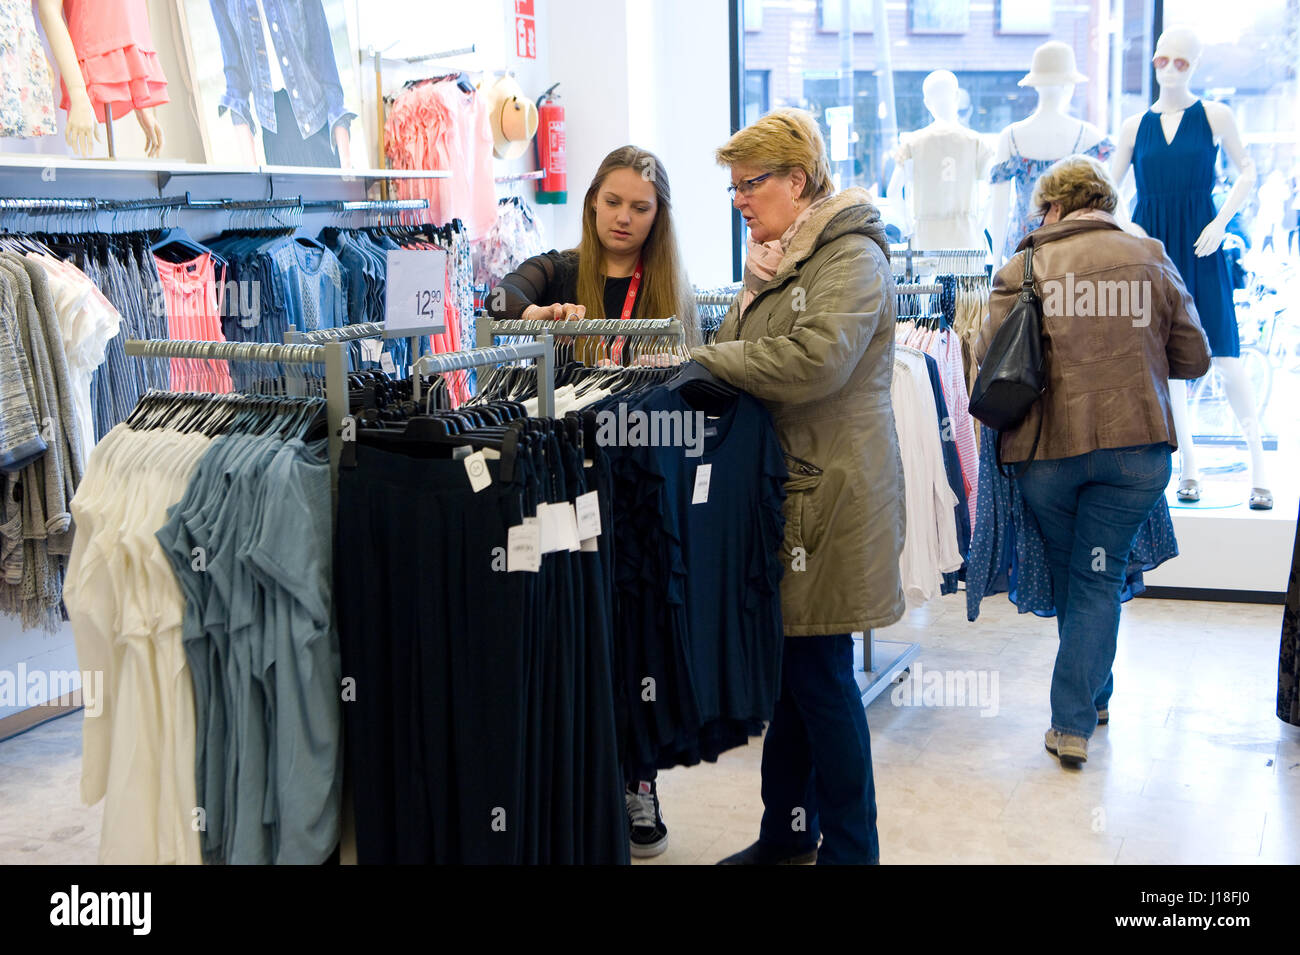 ENSCHEDE, HOLANDA - 13 de abril, 2017: Las mujeres son las compras en la tienda de ropa C&A después de que ha sido reabierto. Foto de stock